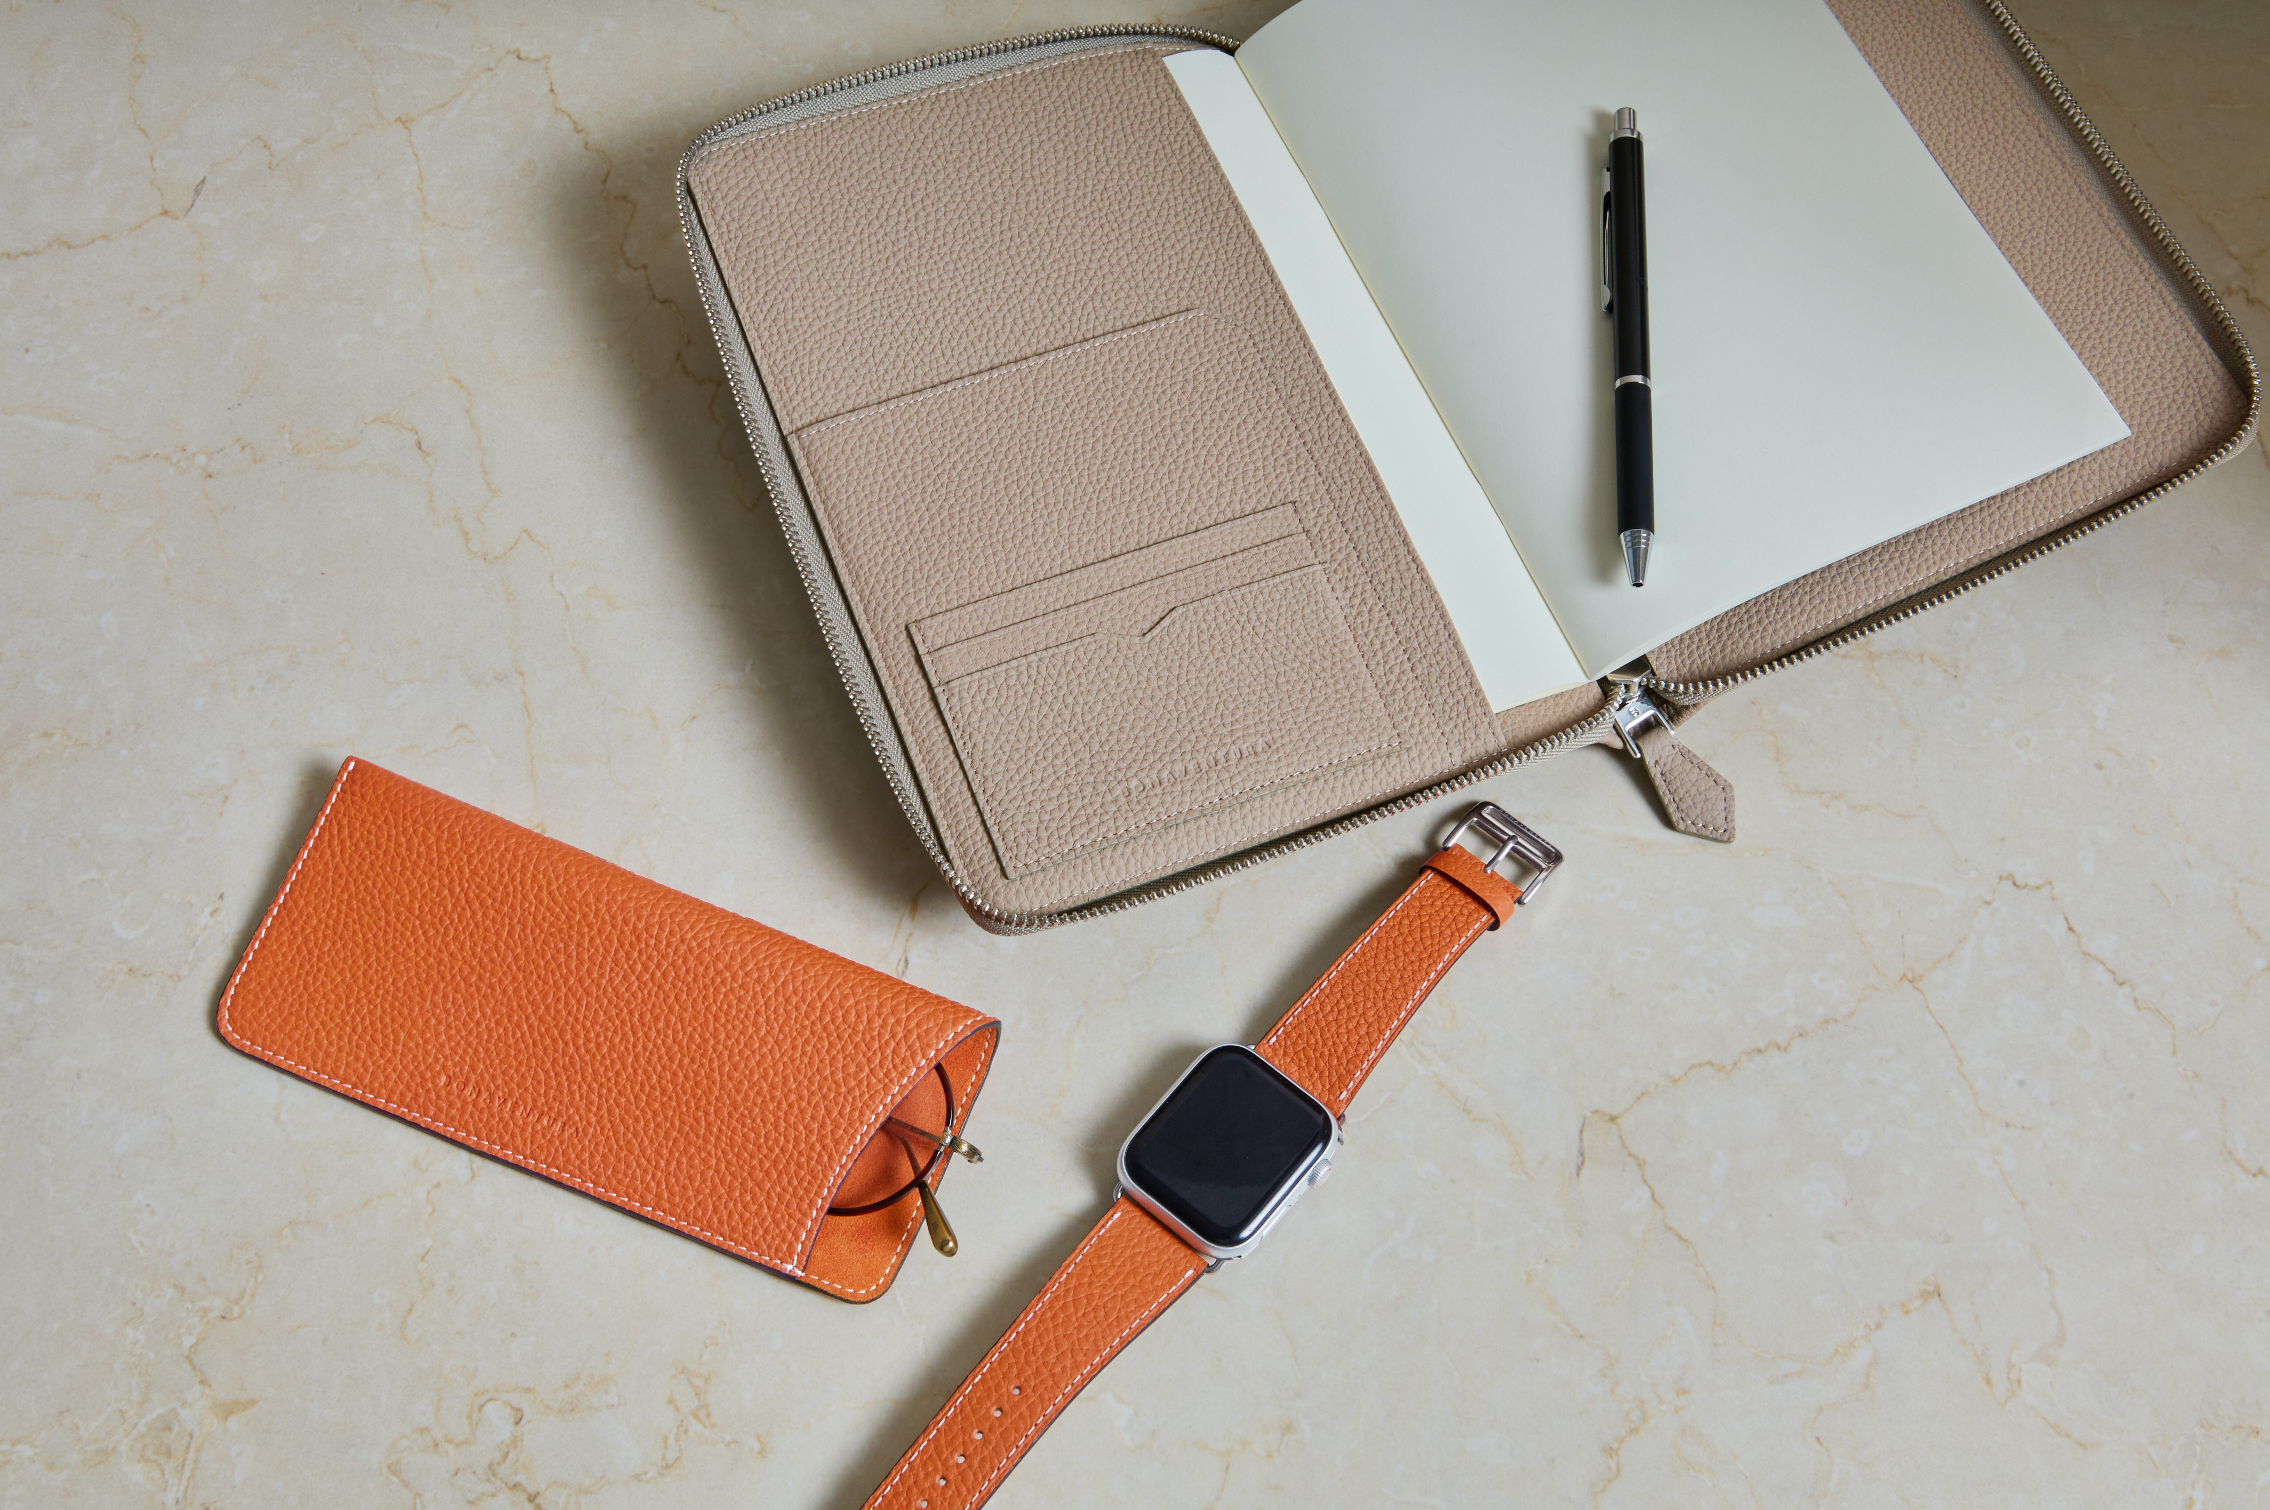 Vari accessori in pelle BONAVENTURA per gadget e riunioni di lavoro disposti con stile su una scrivania.